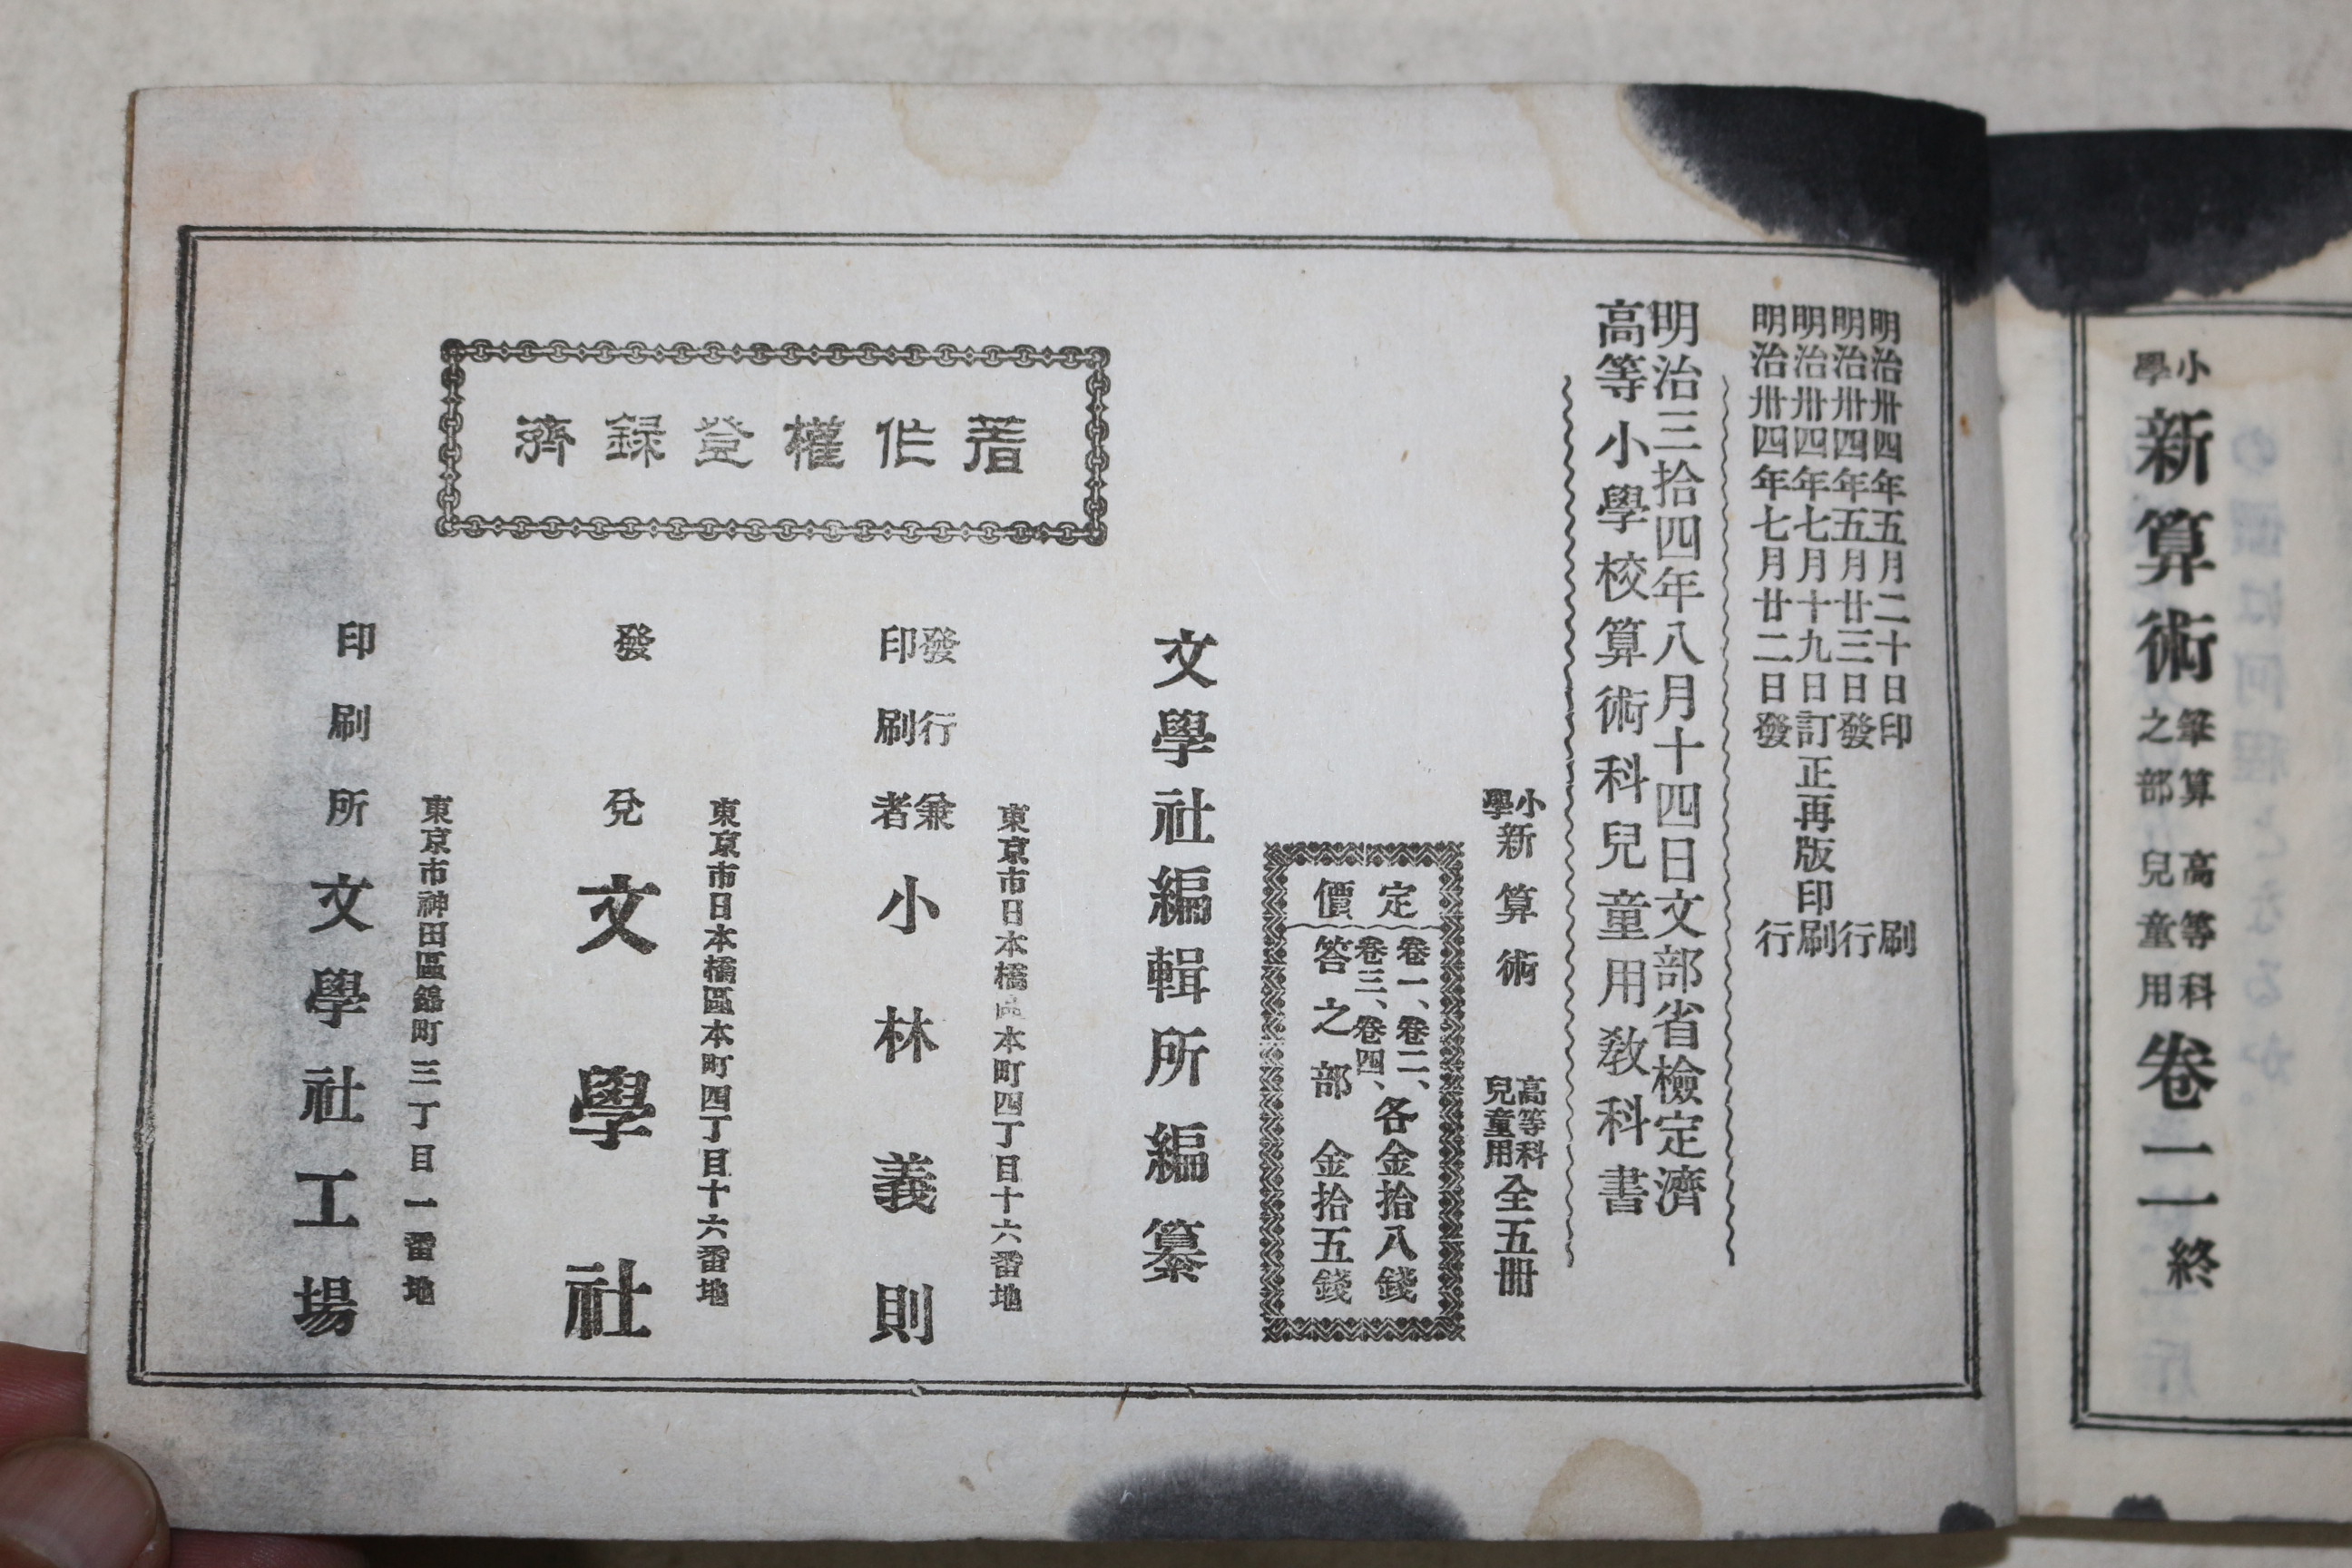 1901년(명치34년) 소학 신산술 고등과아동용 권2